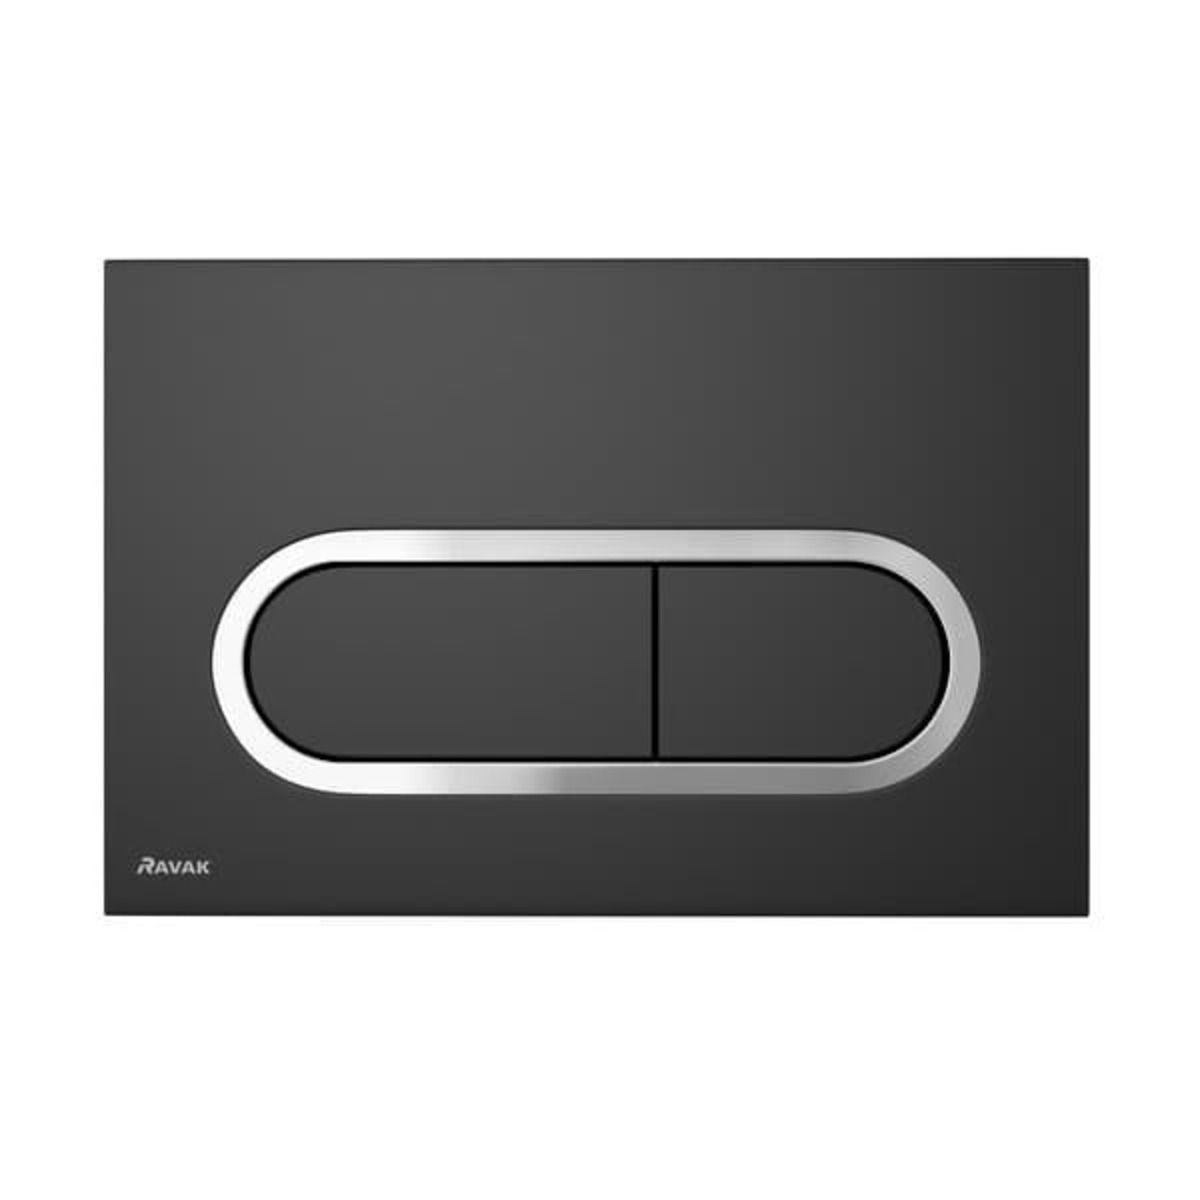 Ovládací tlačítko Ravak Chrome černé X01797 - Siko - koupelny - kuchyně